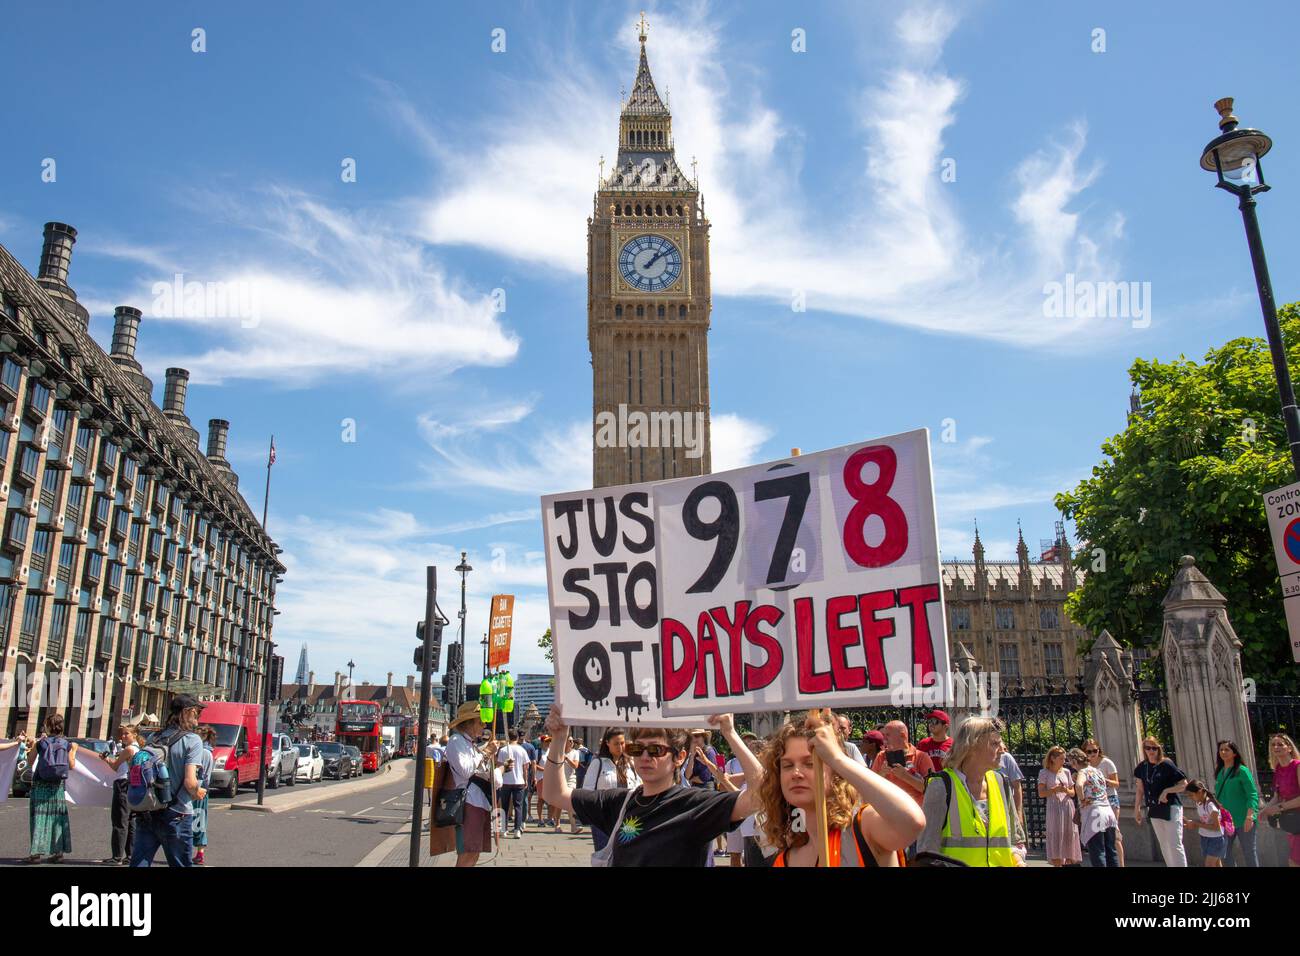 Londra, Inghilterra, Regno Unito 23-07-2022 tutto ciò che vogliamo è fermare il petrolio, il costo della vita e la crisi climatica protesta. Gli attivisti della ribellione dell'estinzione, basta fermare il petrolio e isolare la Gran Bretagna uniscono le forze per protestare contro le Camere del Parlamento Foto Stock